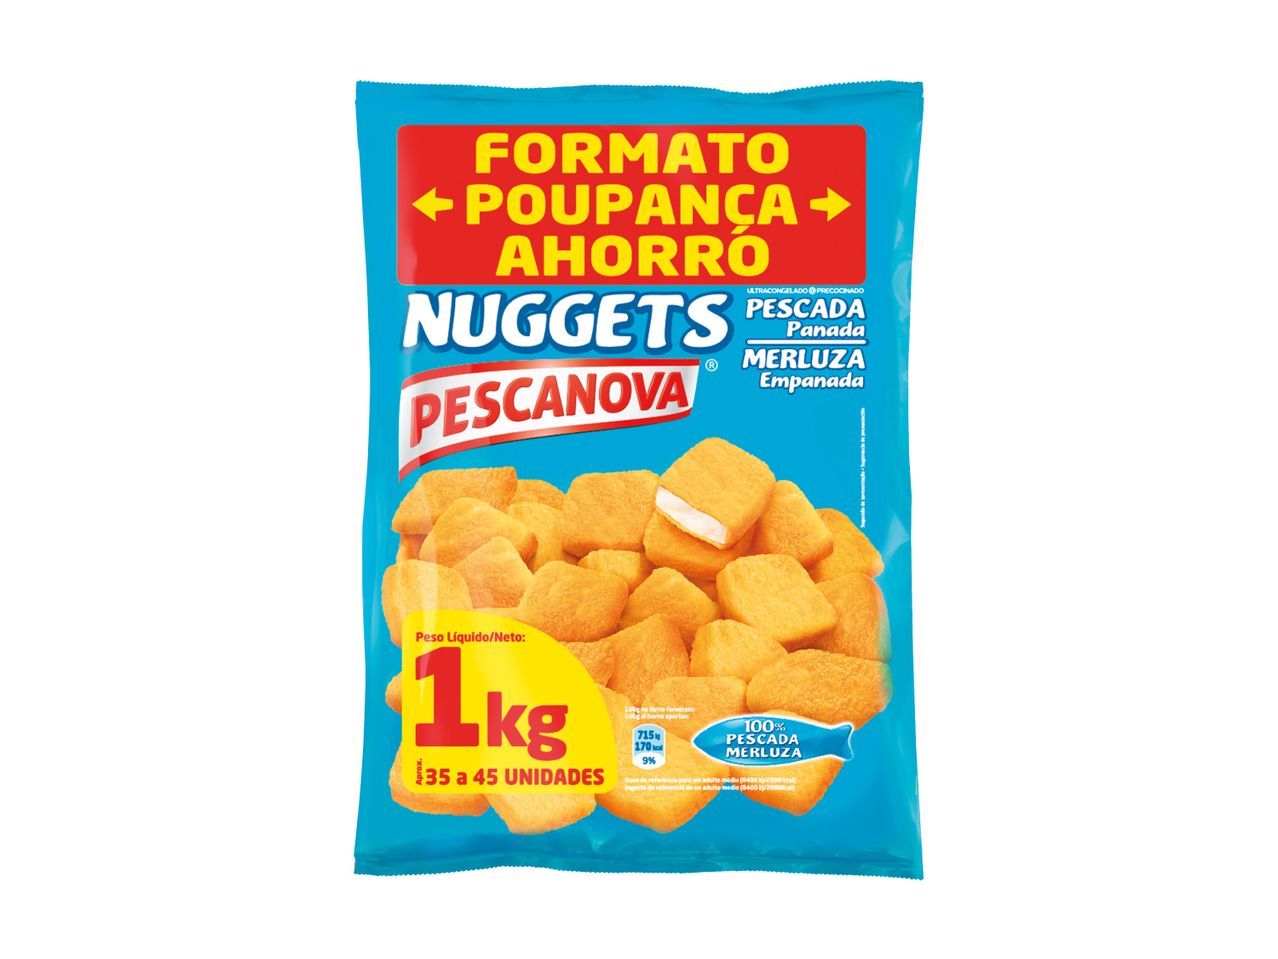 Pescanova® Nuggets de Pescada Panada